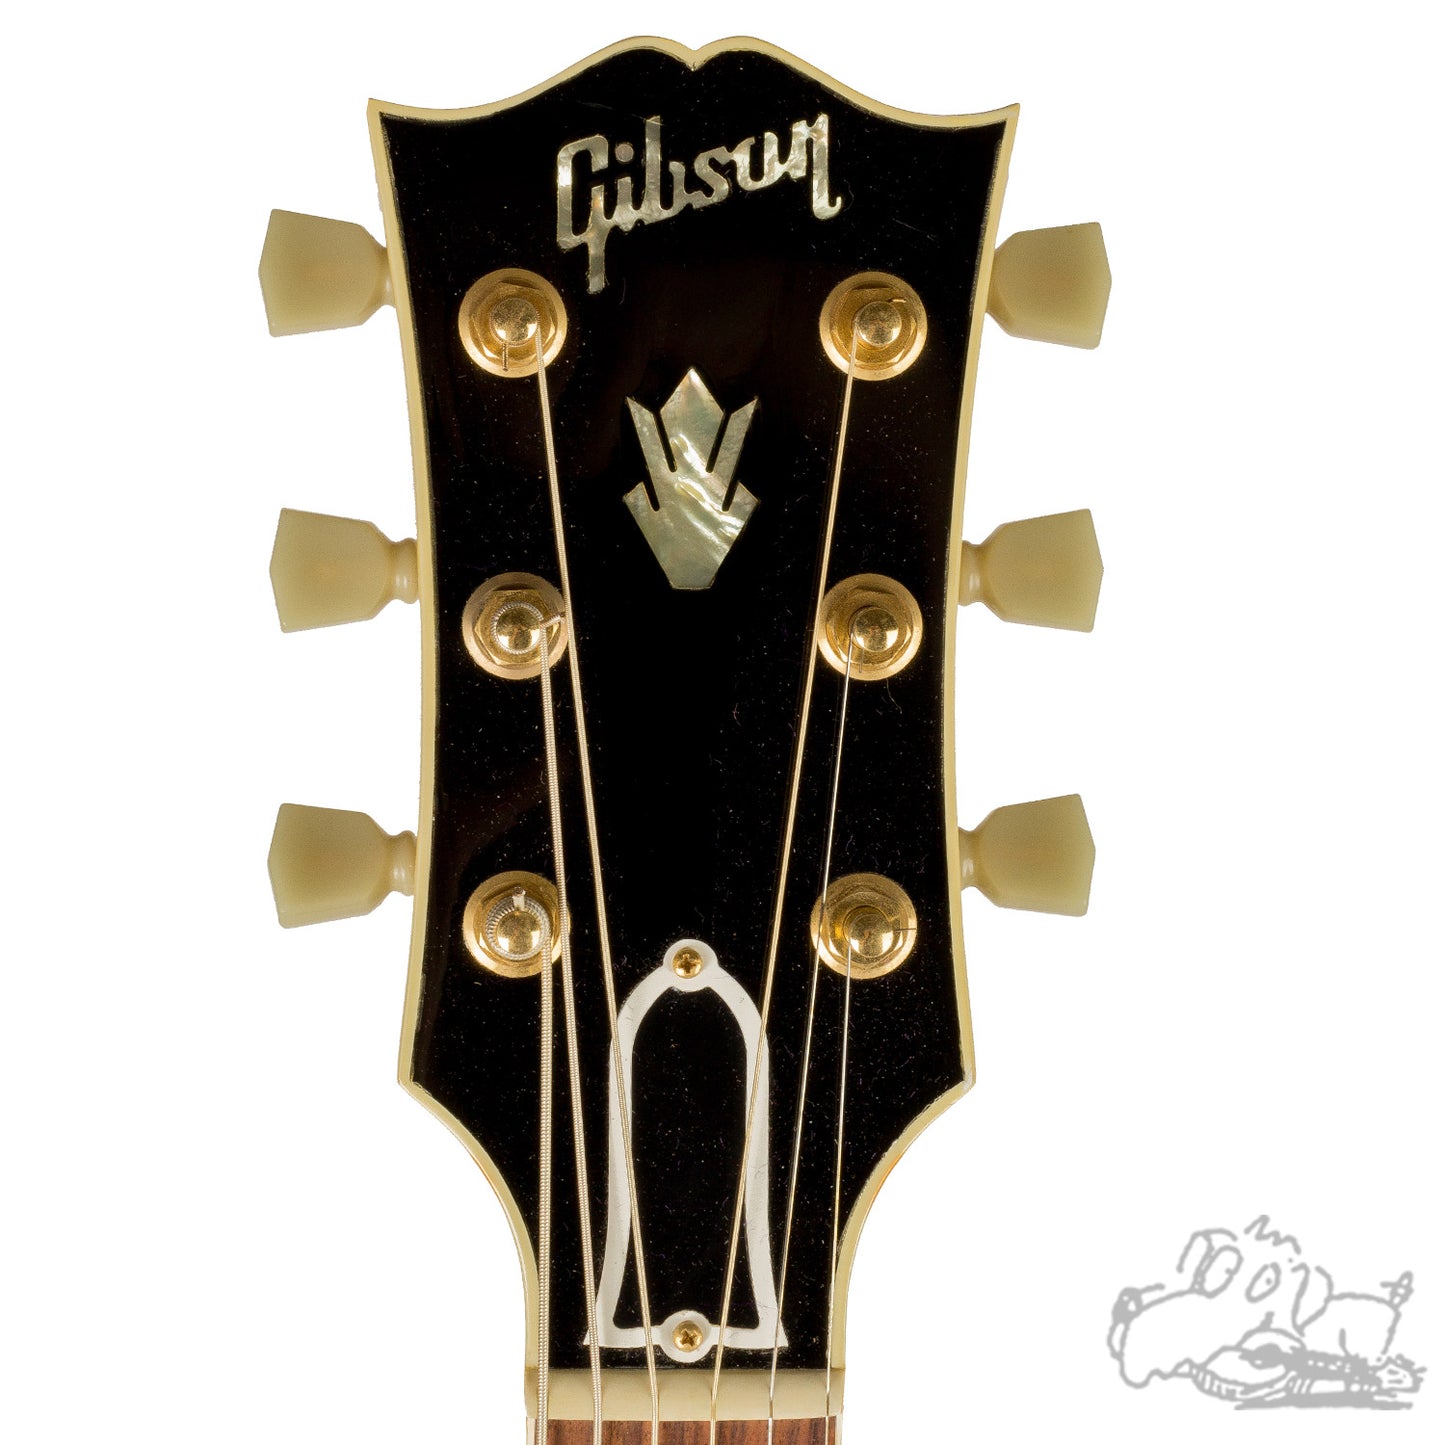 1996 Gibson J-200 Elvis Presley